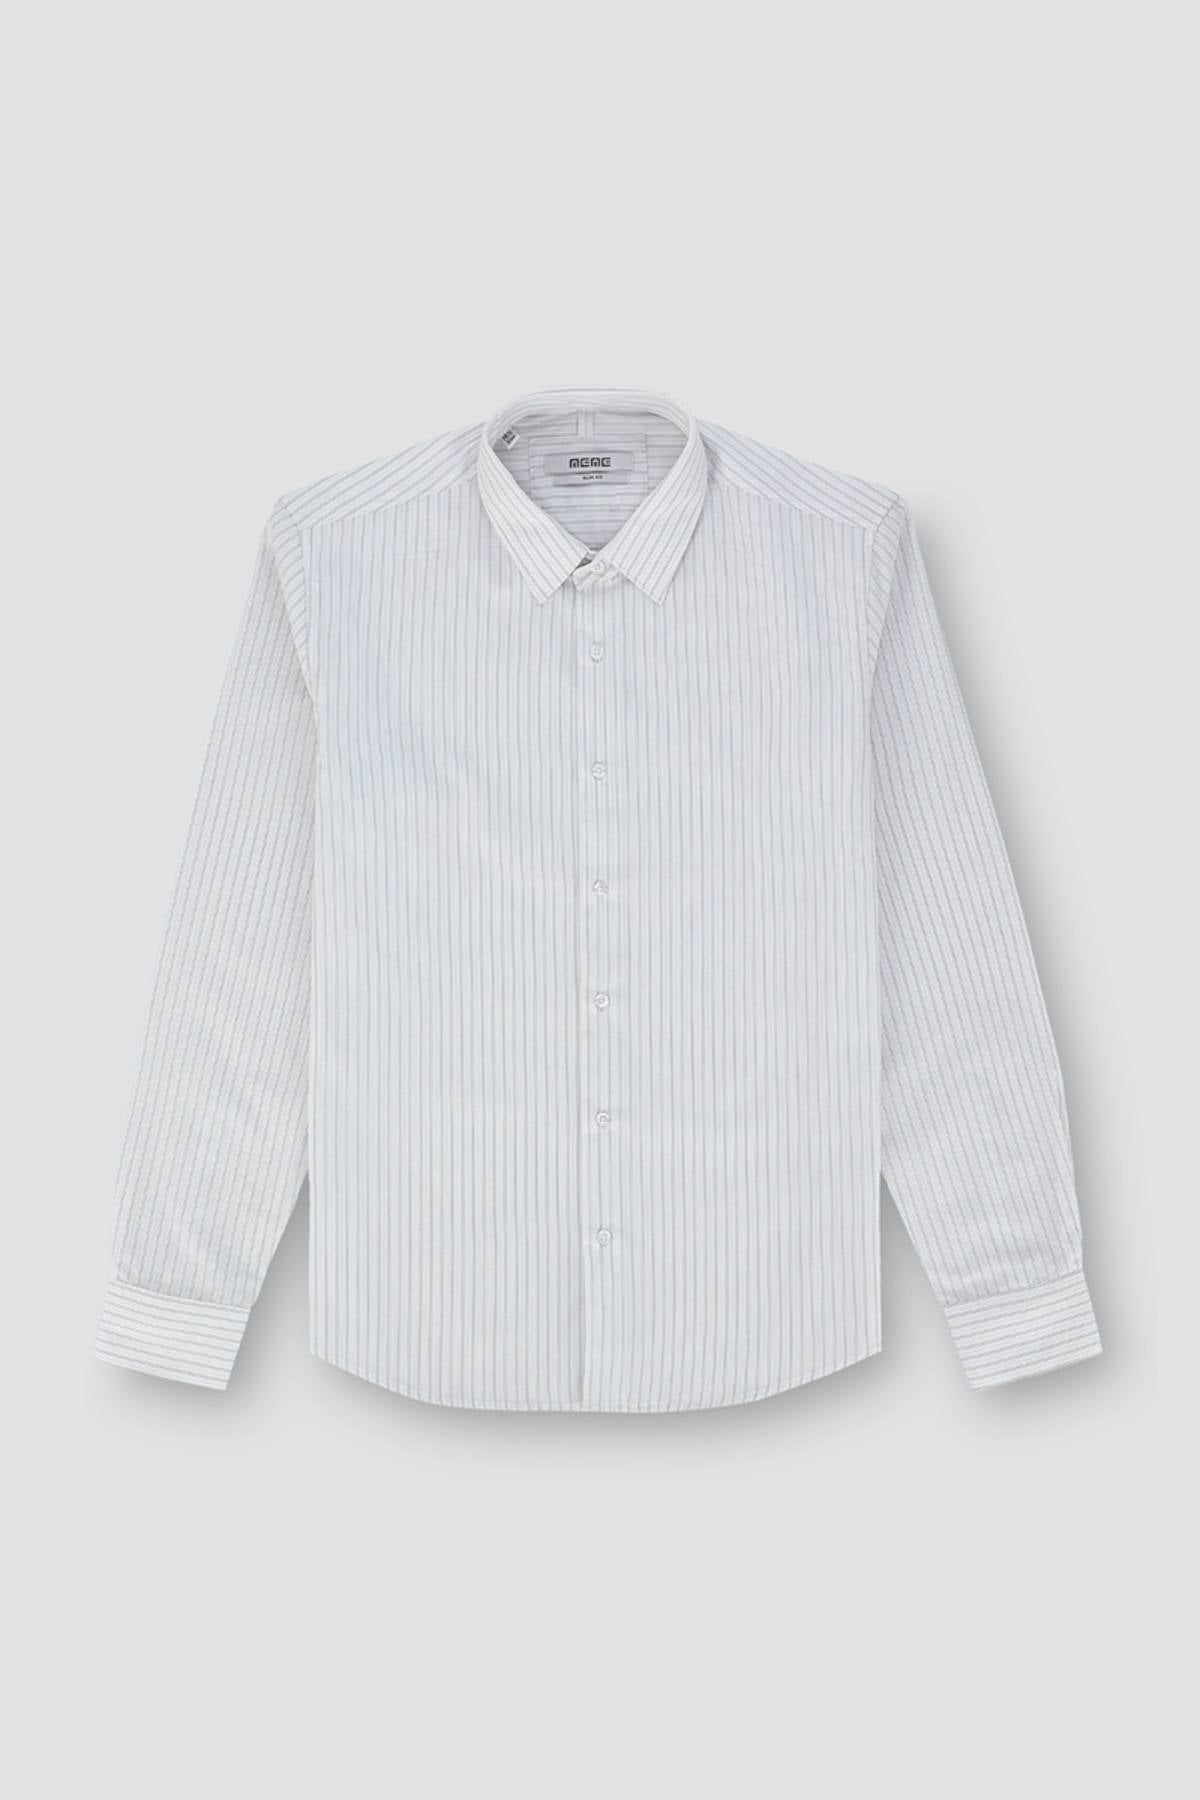 Striped Button Down Shirt White – MEME